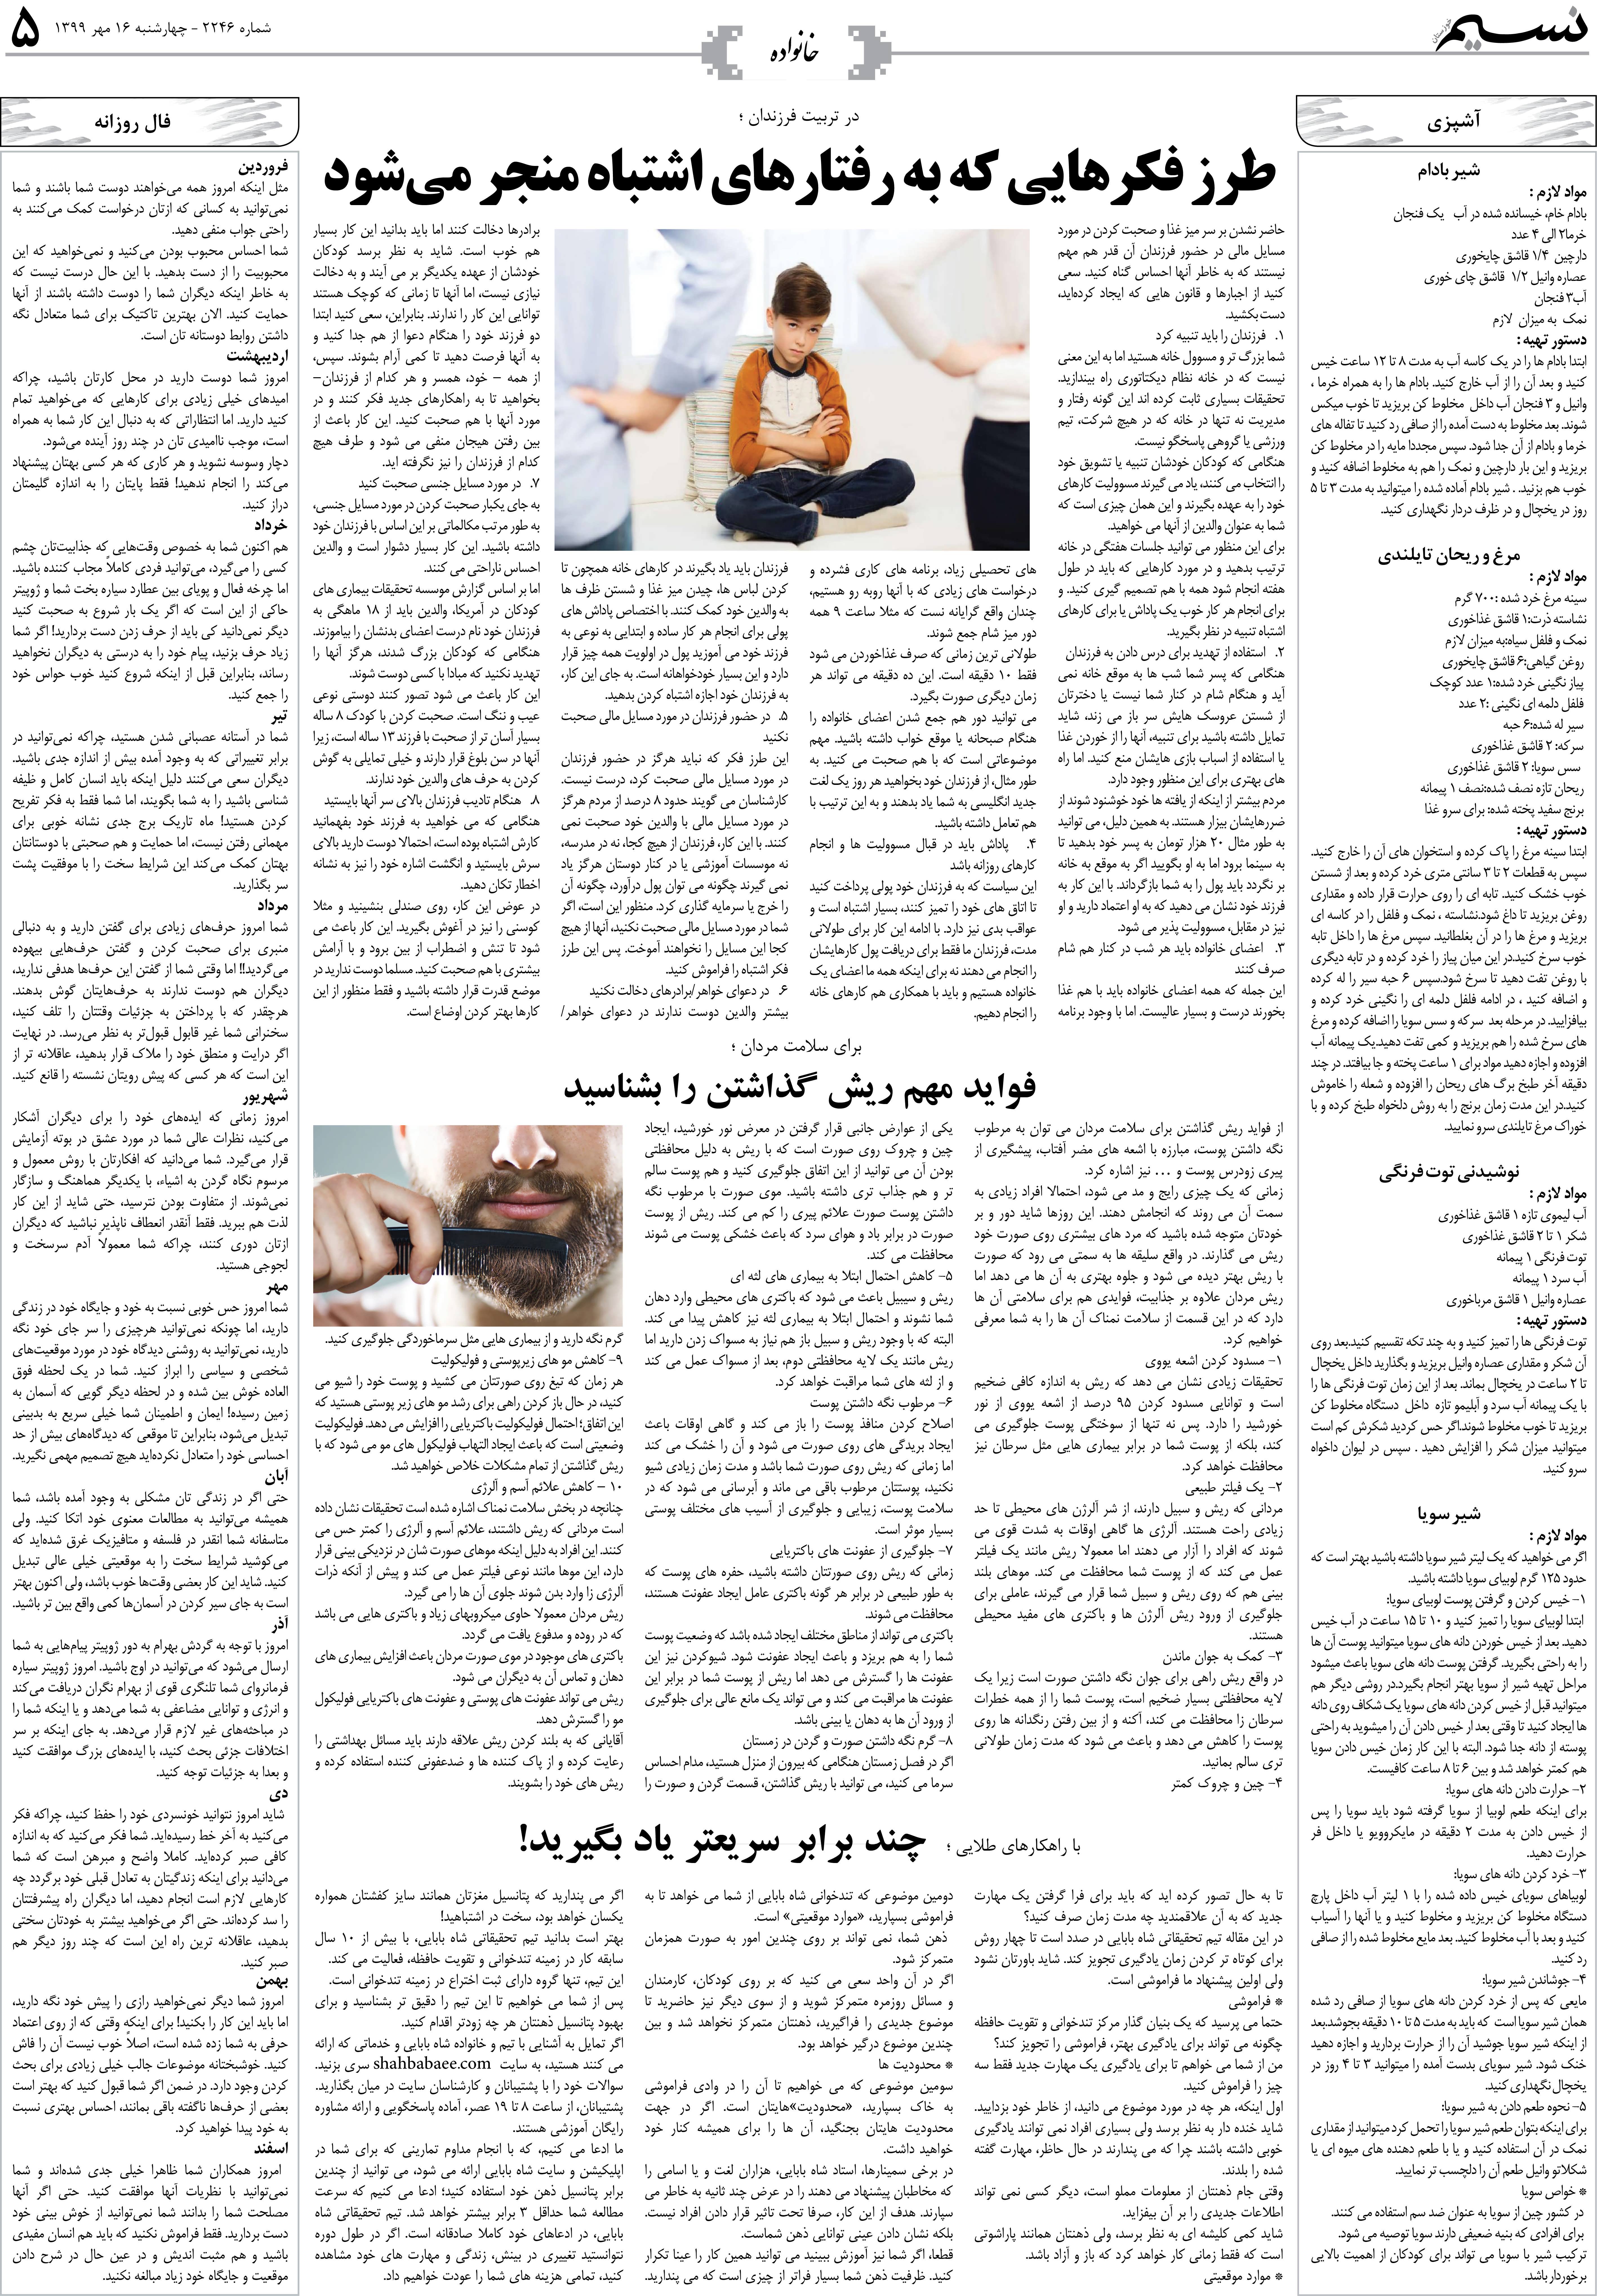 صفحه خانواده روزنامه نسیم شماره 2246